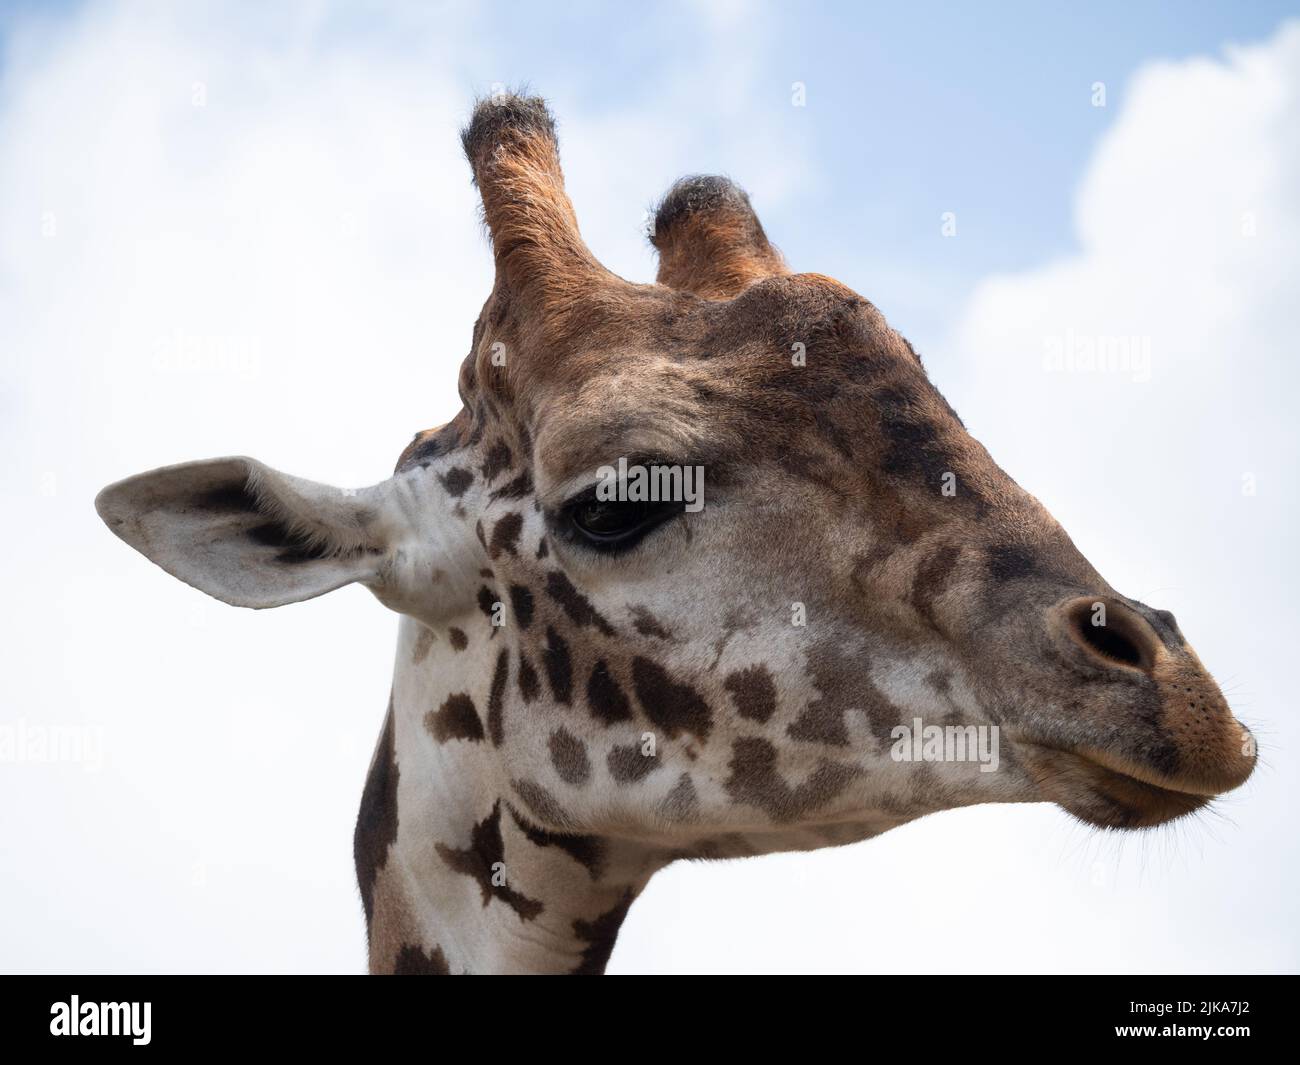 Extreme Nahaufnahme des Gesichts einer gefangenen Masai-Giraffe oder Giraffa camelopardalis. Fotografiert im Houston Zoo in Texas. Stockfoto